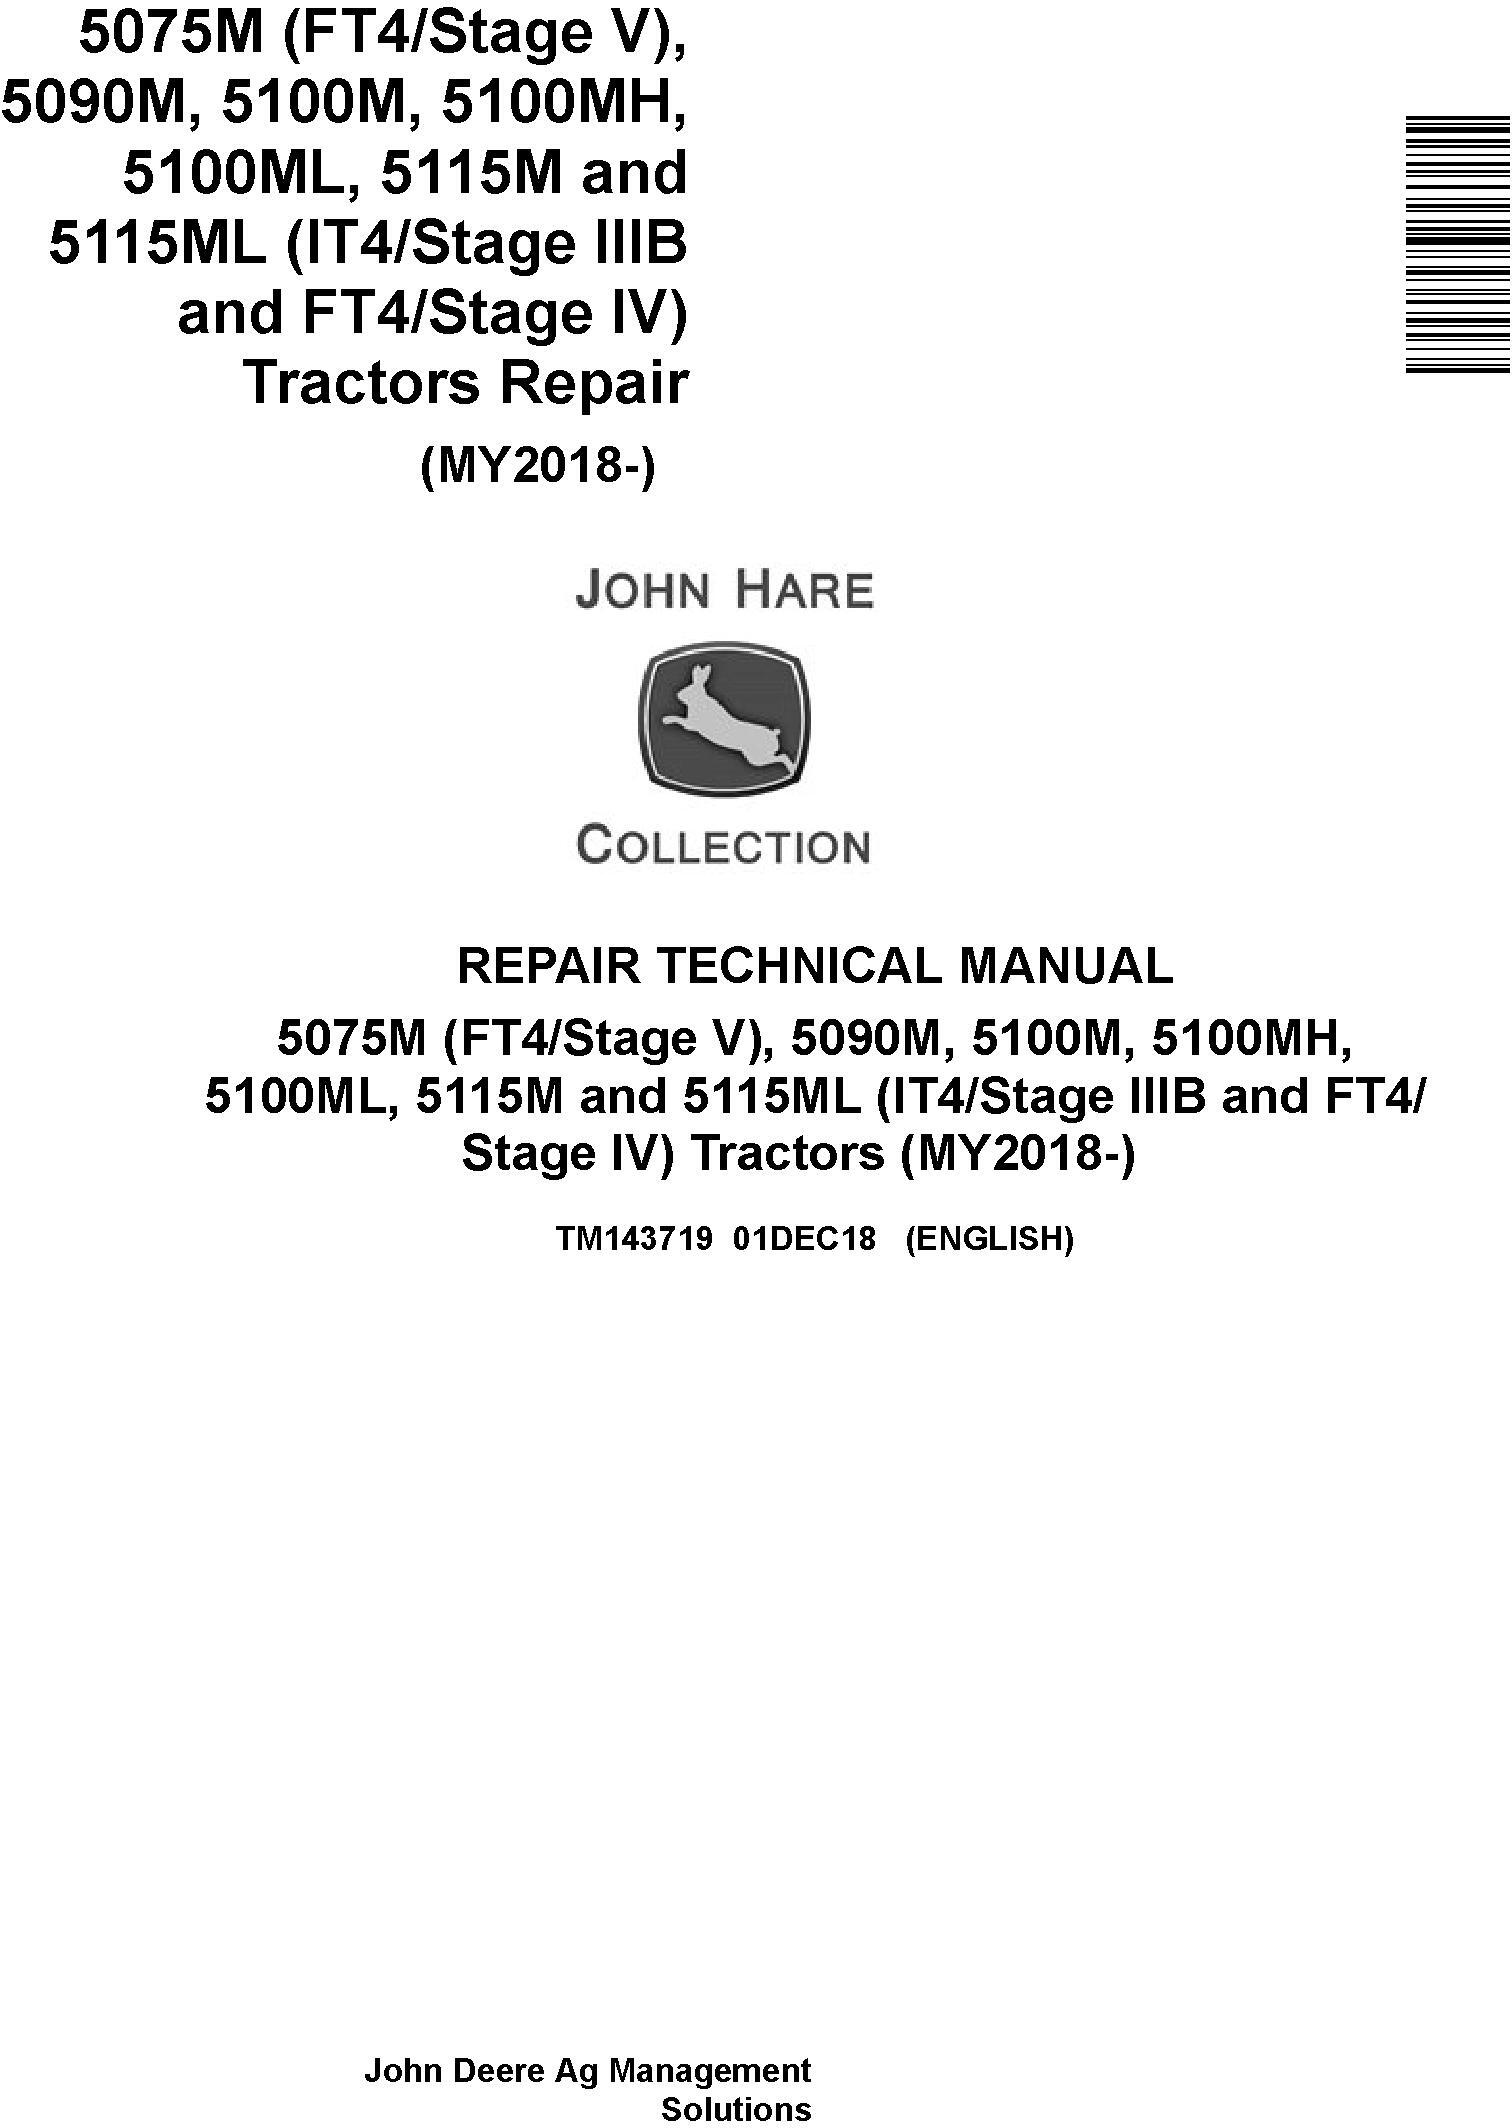 John Deere 5075M 5090M 5100M 5100MH 5100ML 5115M 5115ML Tractor Repair Technical Manual TM143719